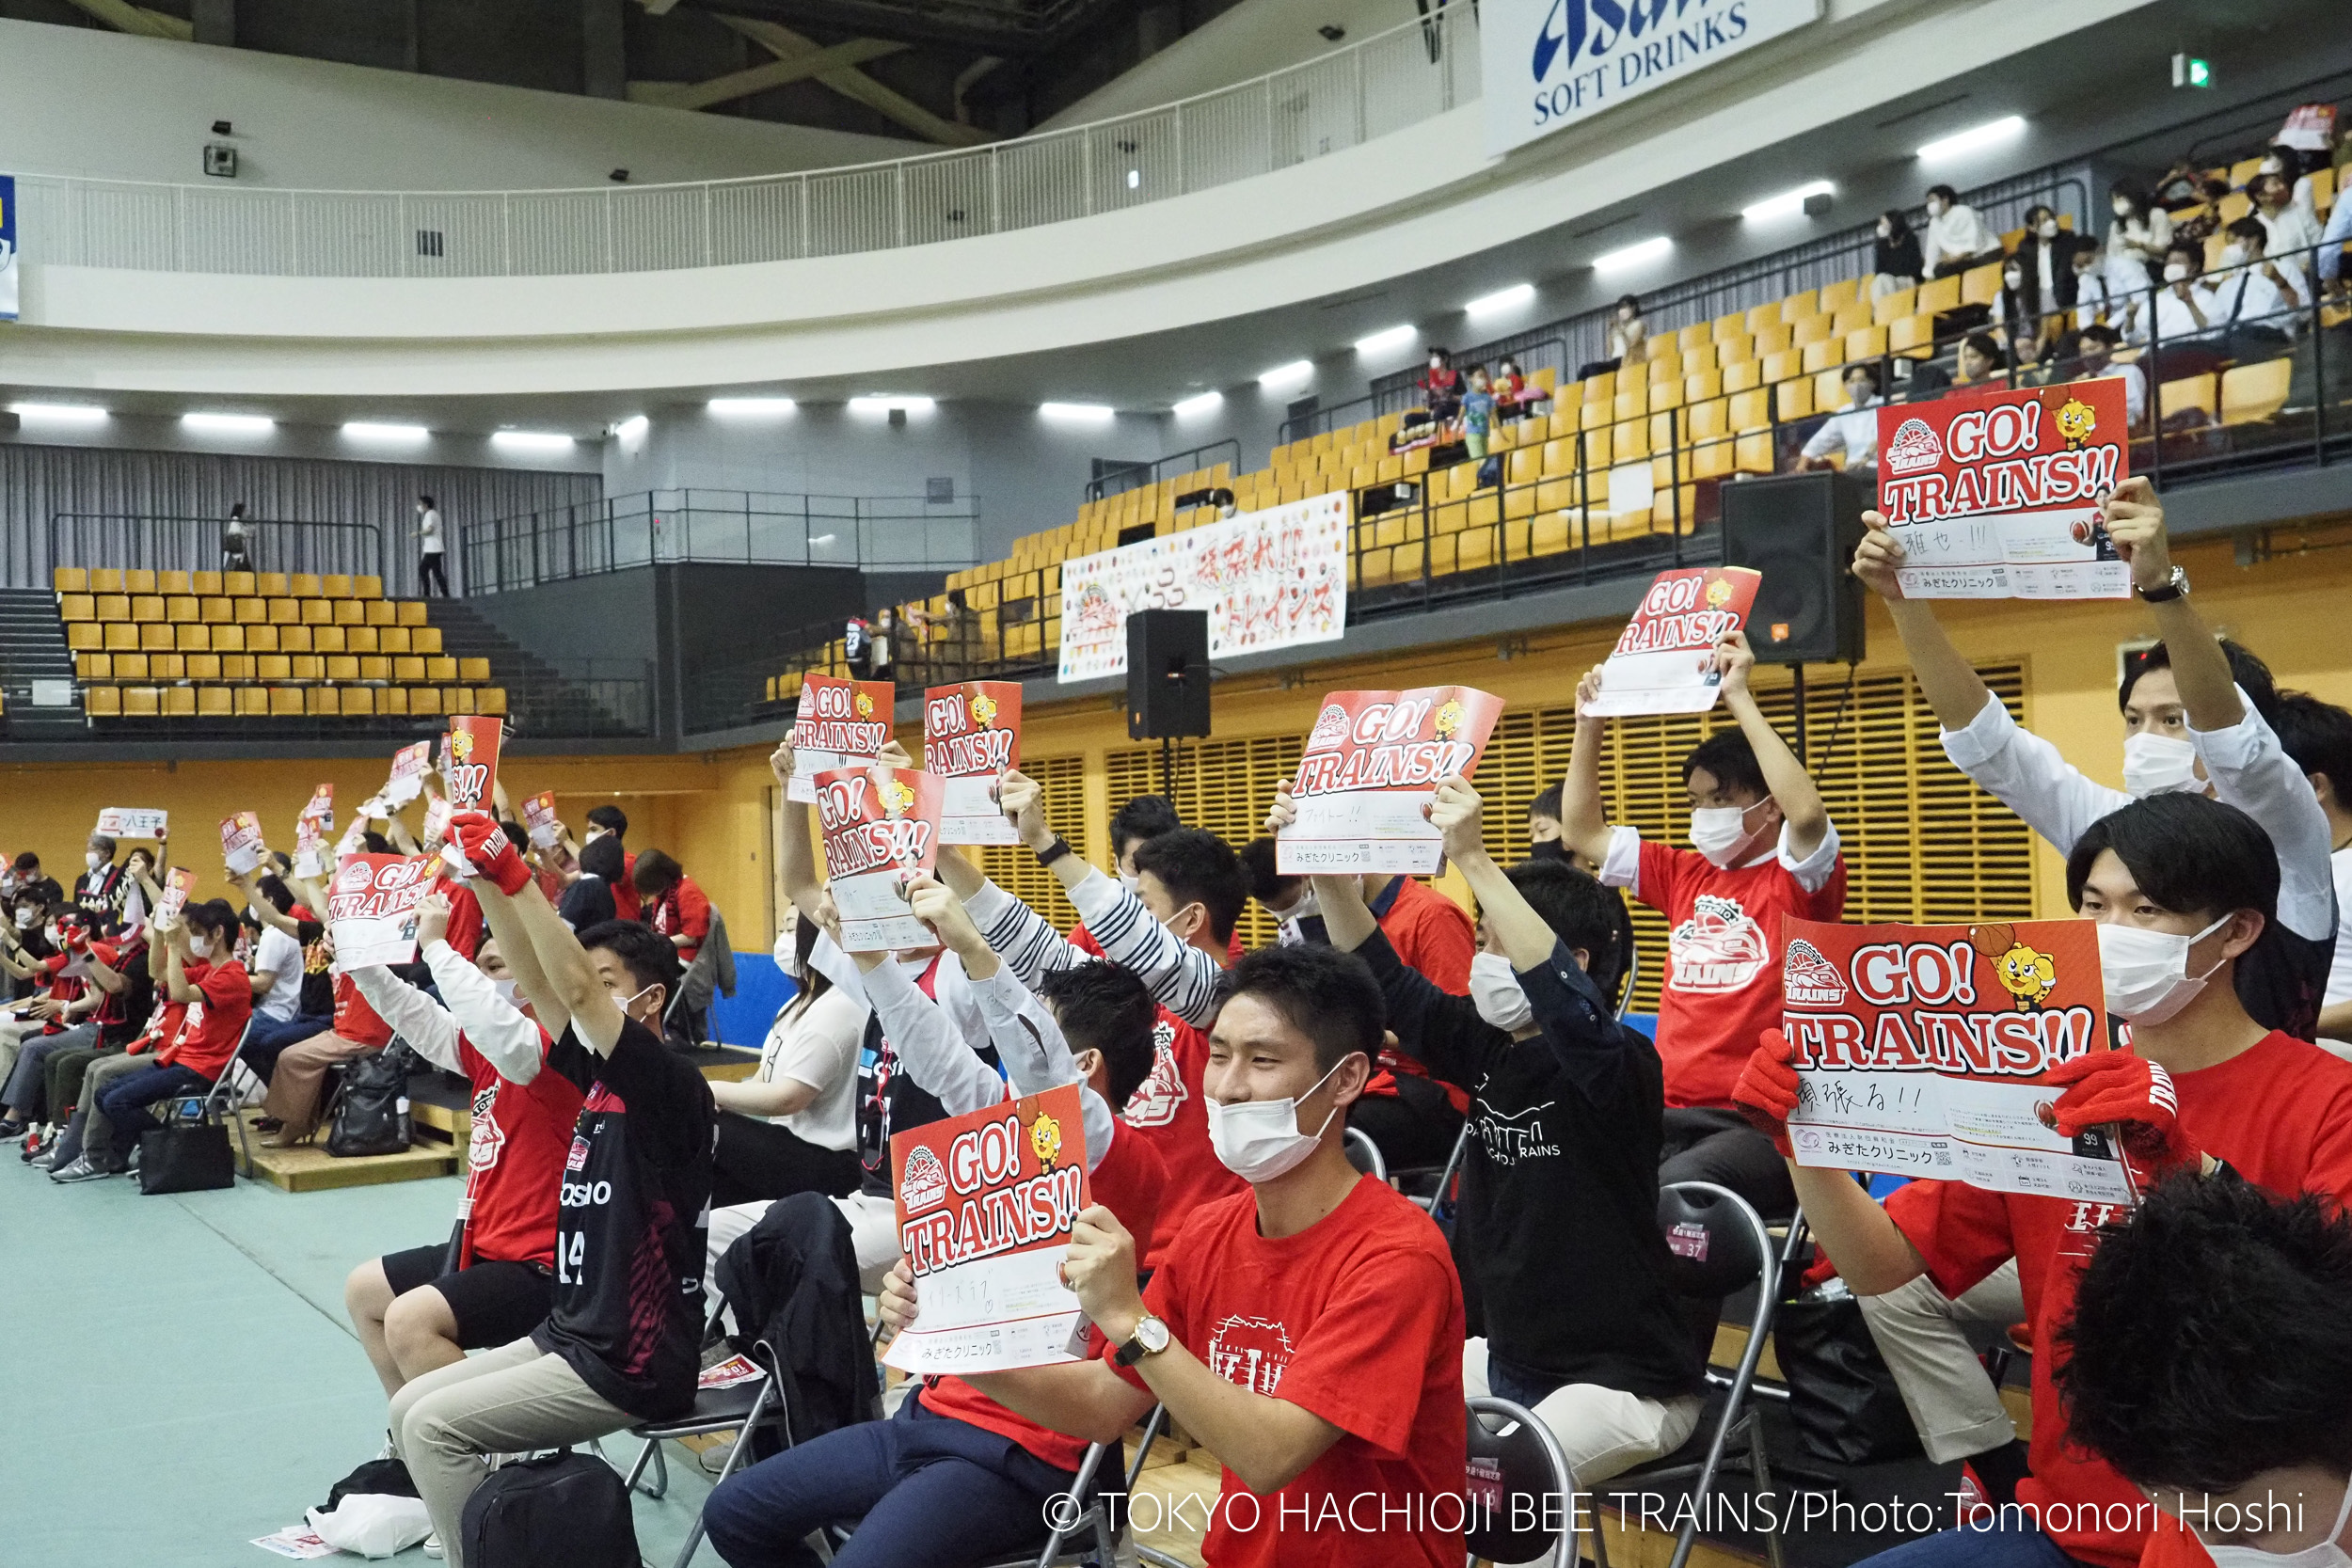 プログラムにメッセージを書き込み、ビートレインズを熱く応援 （c)TOKYO HACHIOJI BEE TRAINS / Photo:Tomonori Hoshi